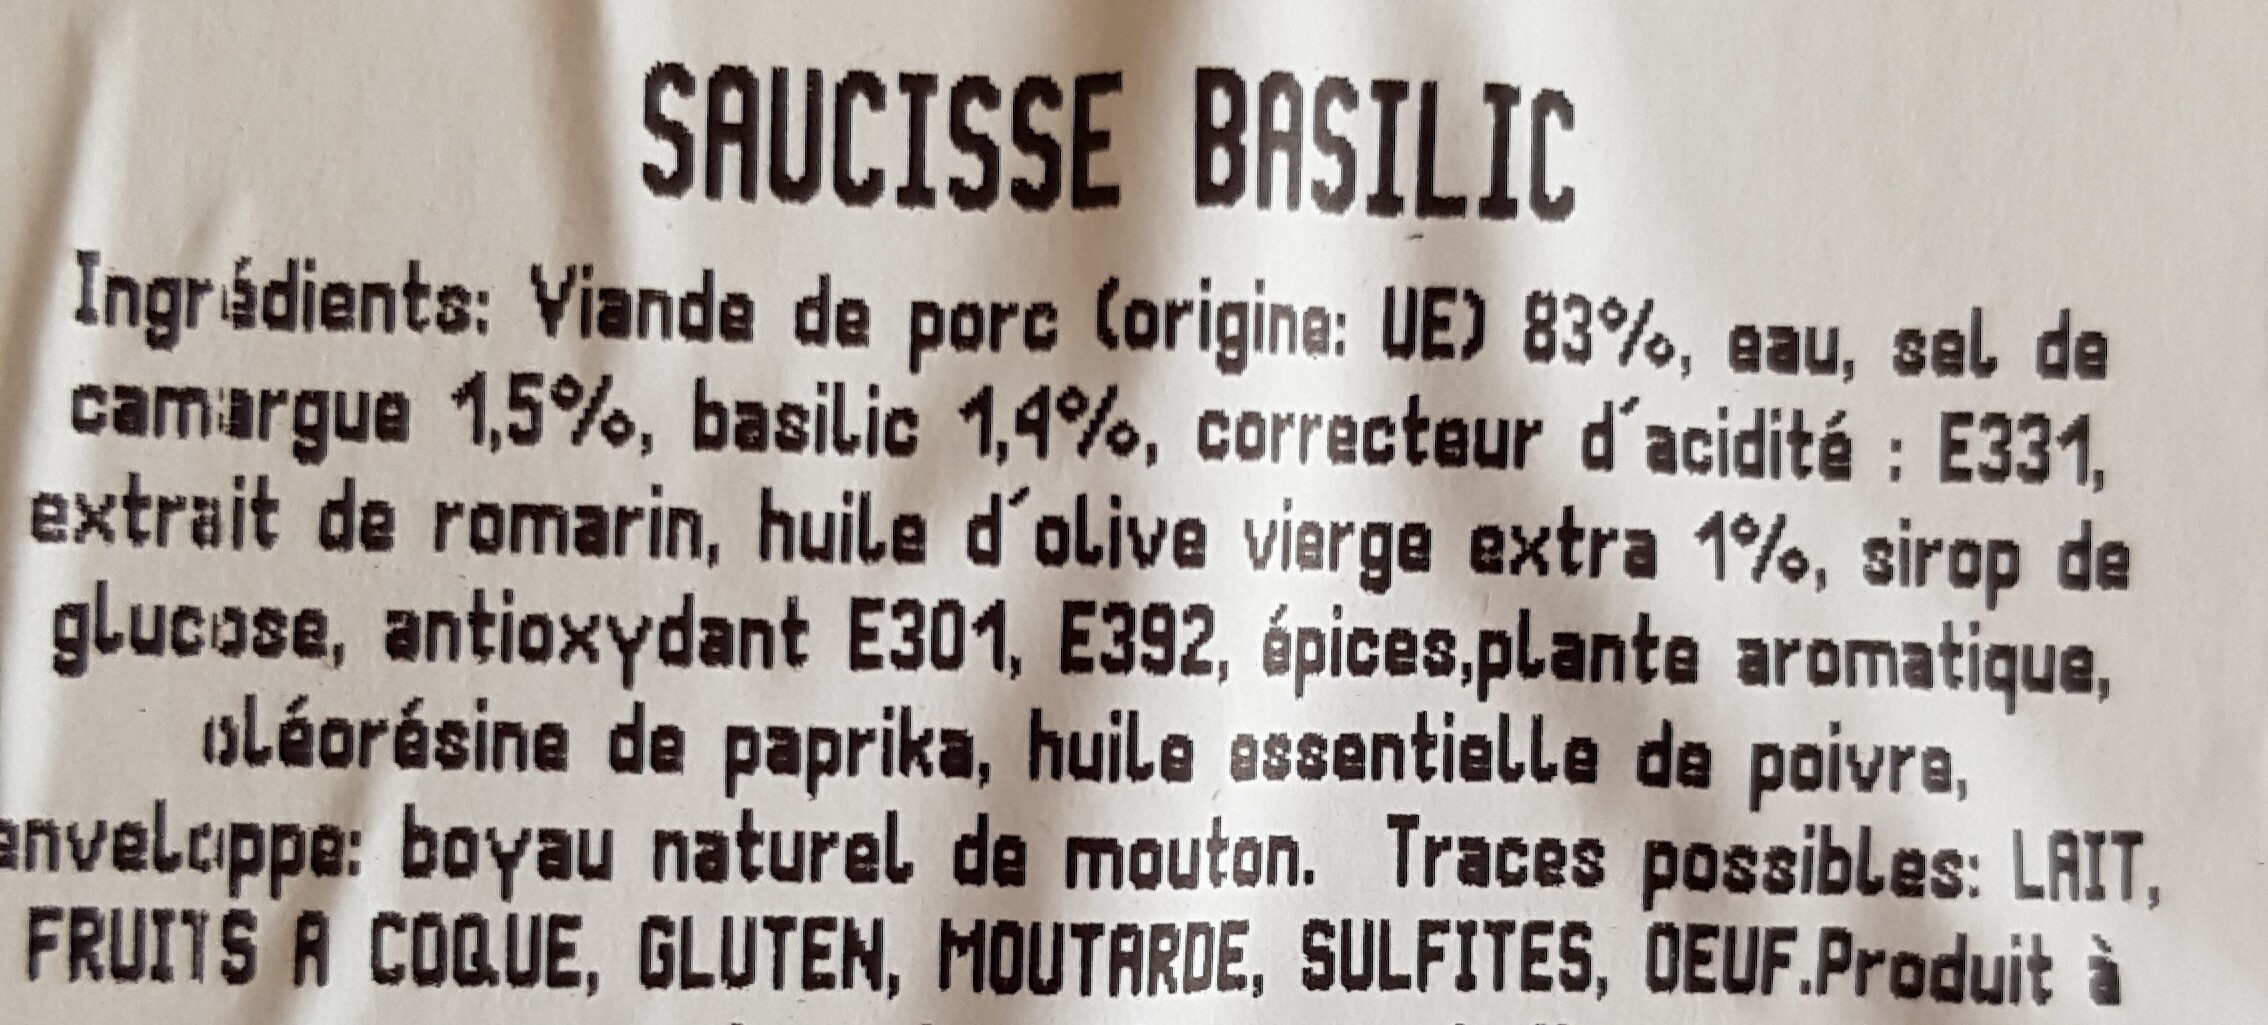 Saucisse au basilic huile d'olive vierge extra - Ingrédients